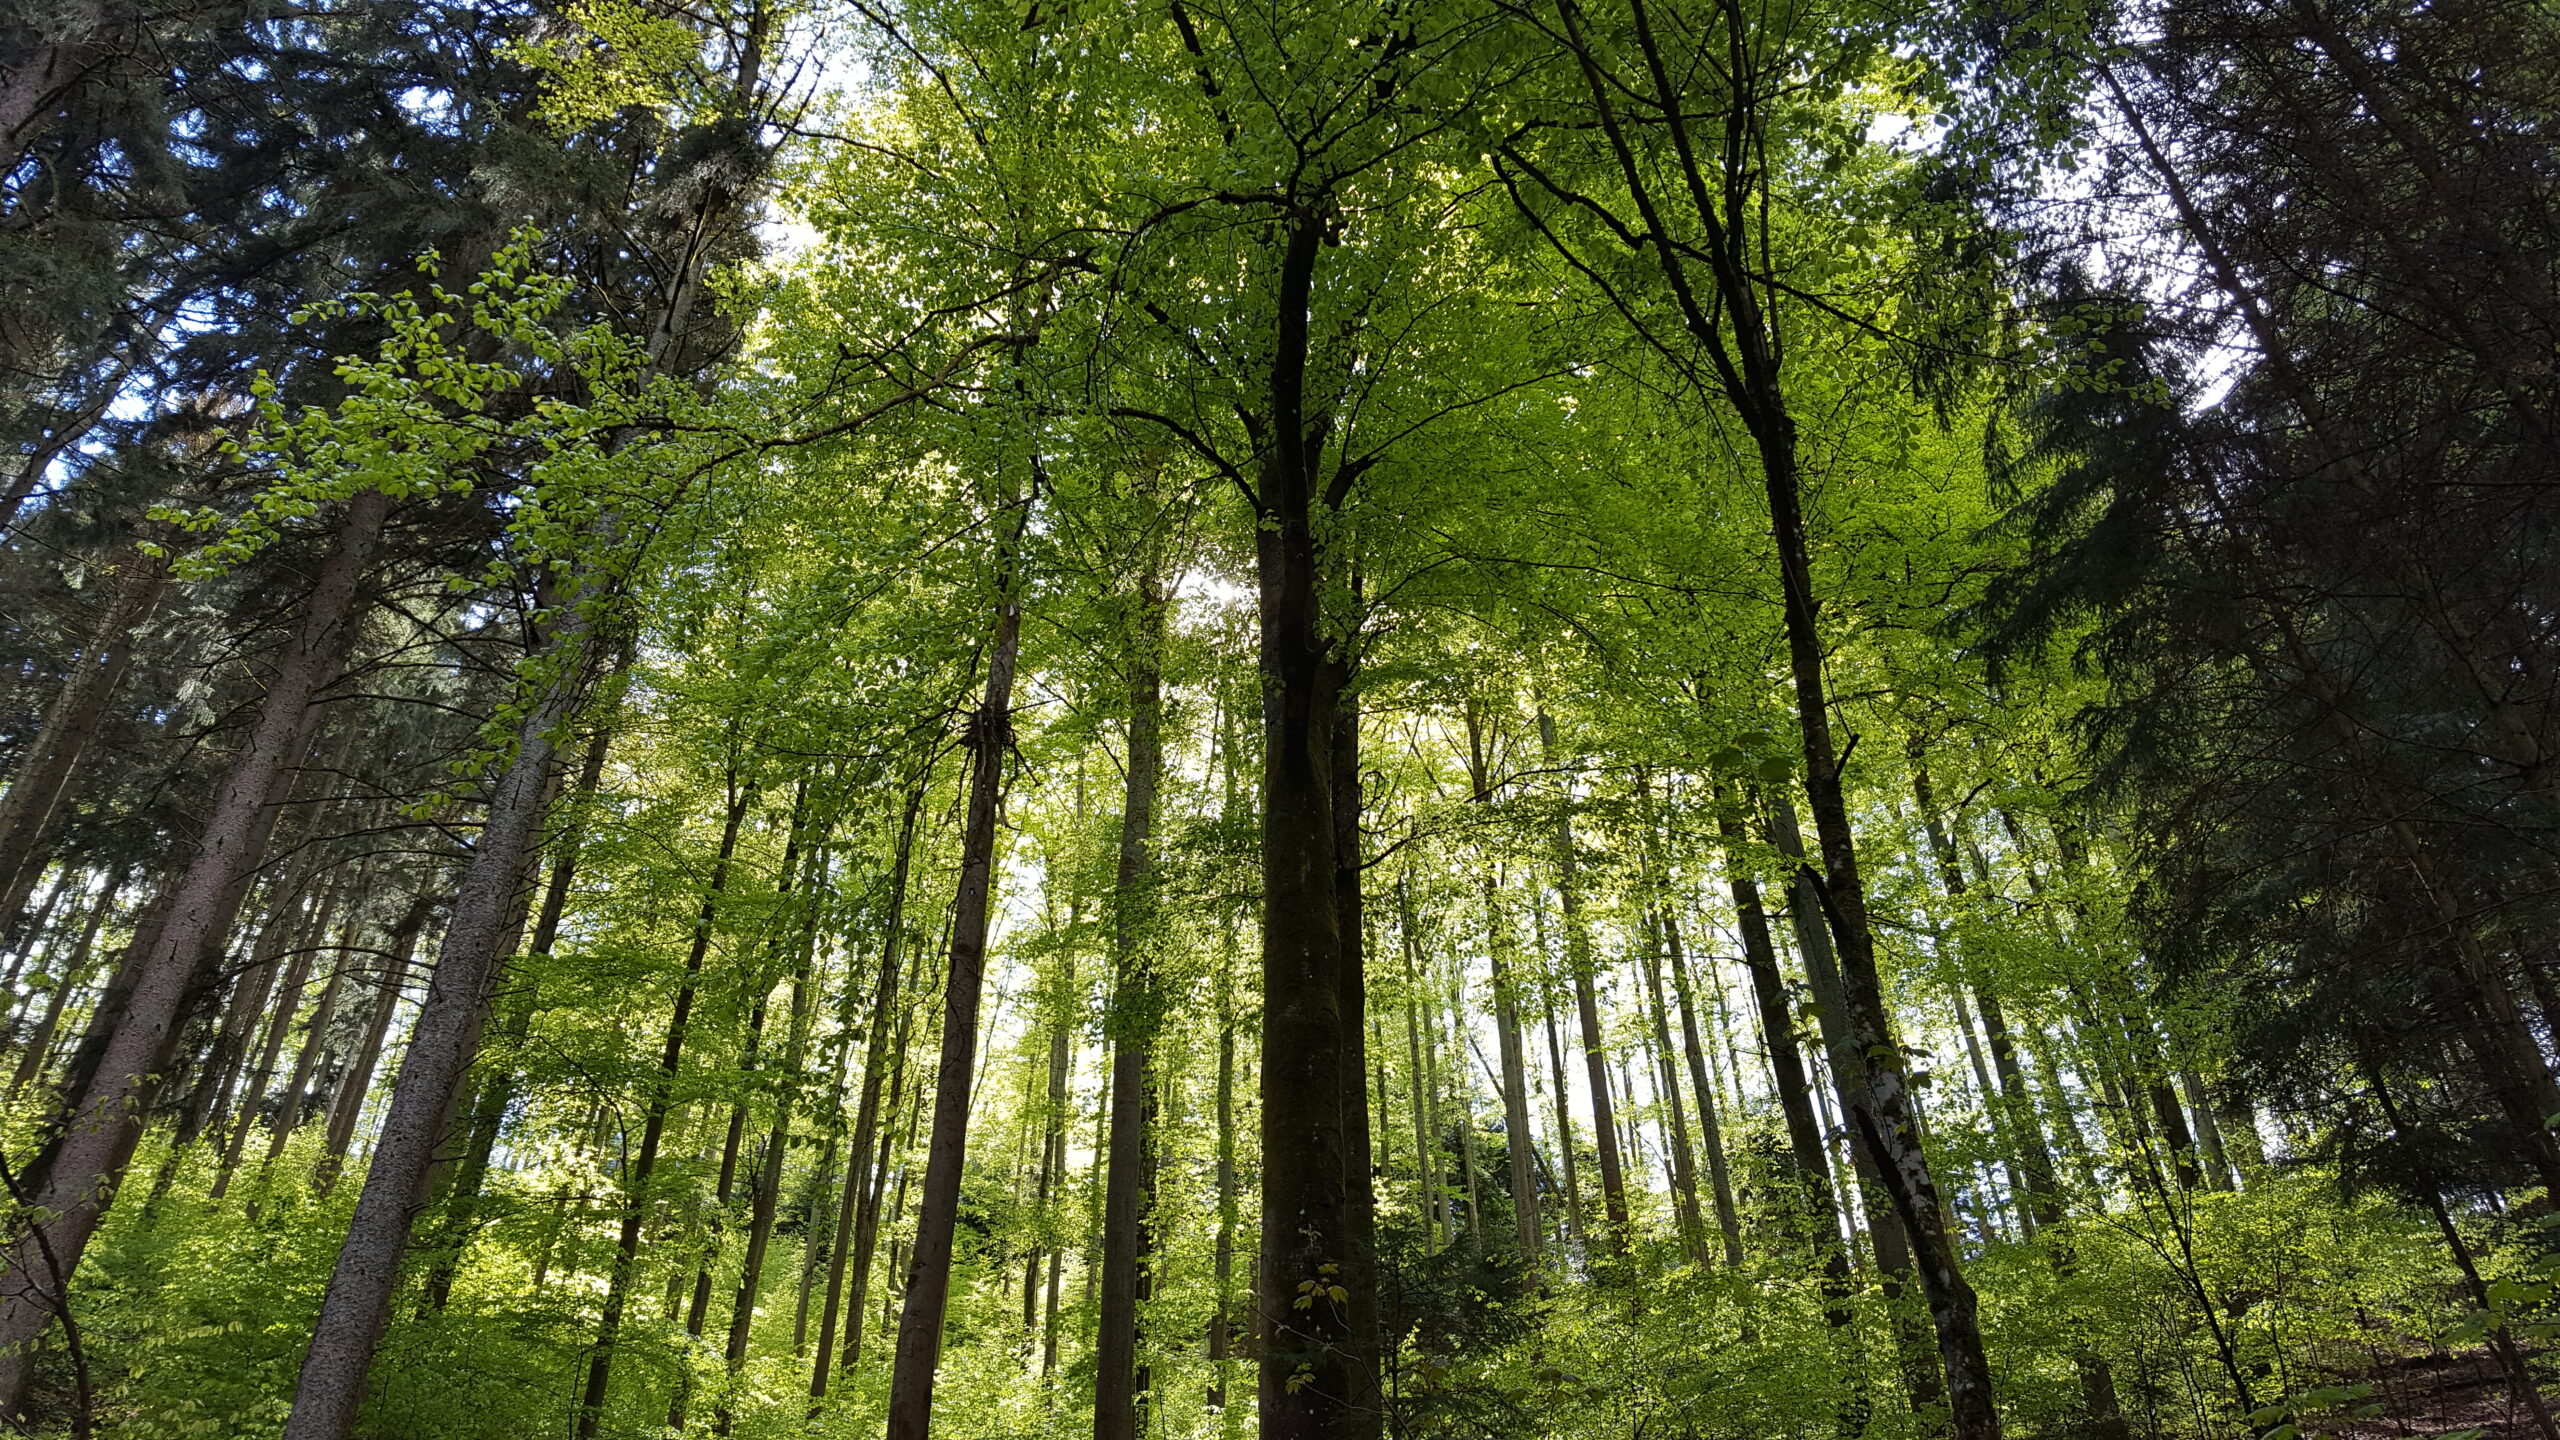 Der Fotograf dieses Bildes stand im Wald und sah zu den mächtigen Bäumen auf, die vor ihm den Hang hinauf und sonnendurchflutet stehen. Zwischen den Wipfeln sieht man kleine Ausschnitte von blauem Himmel.
In der Mitte des Bildes stehen Laubbäume in hellem Grün, links und rechts dunkelgrüne Nadelbäume.